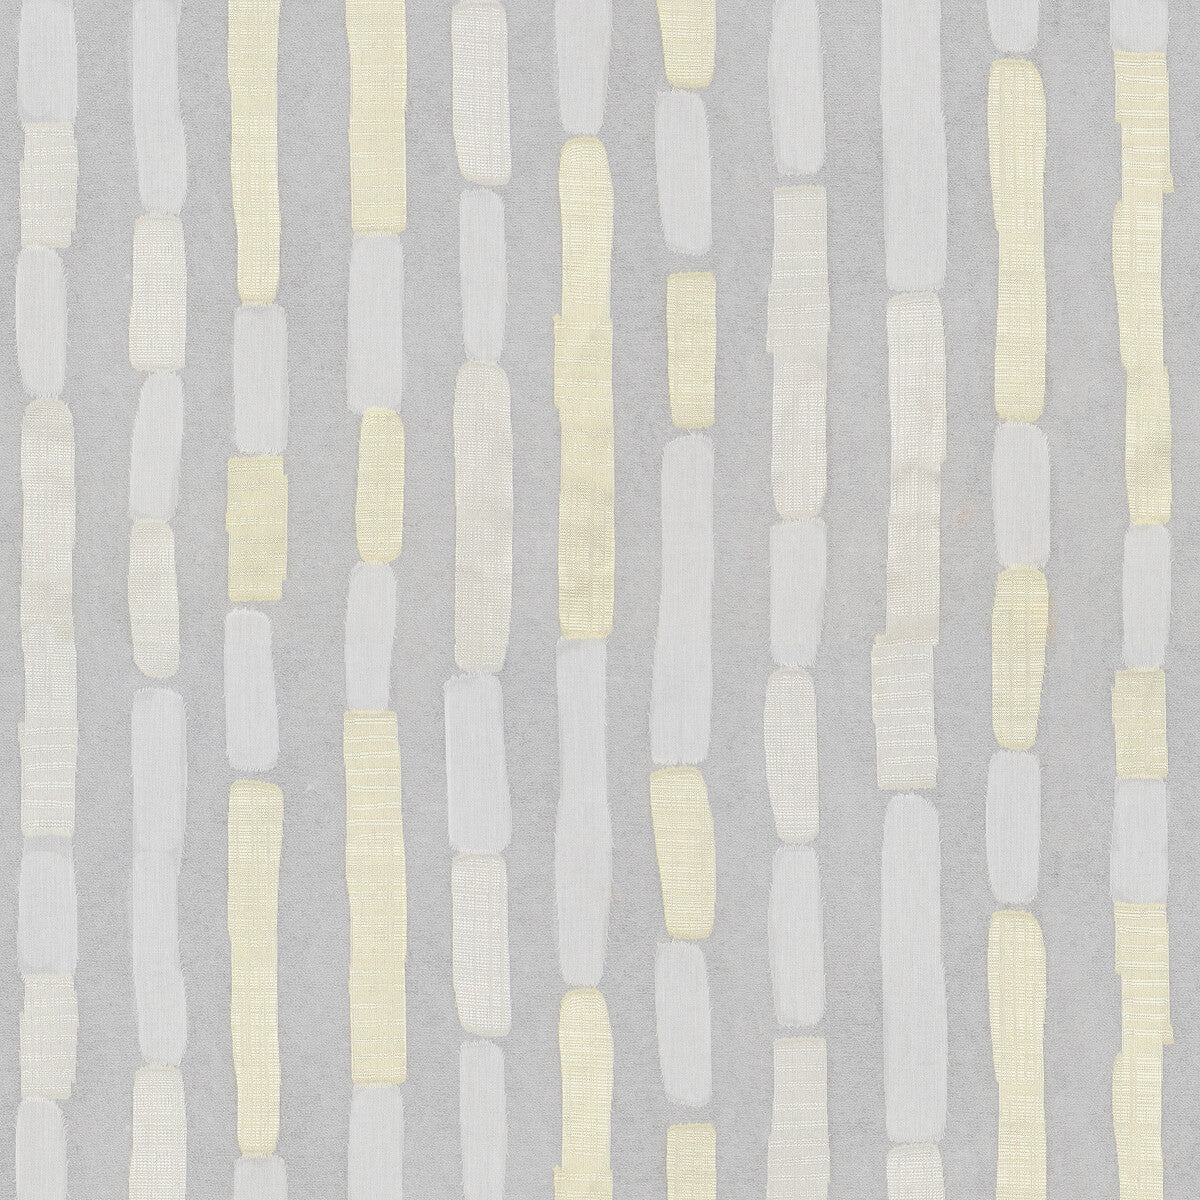 Kravet Basics fabric in 4501-11 color - pattern 4501.11.0 - by Kravet Basics